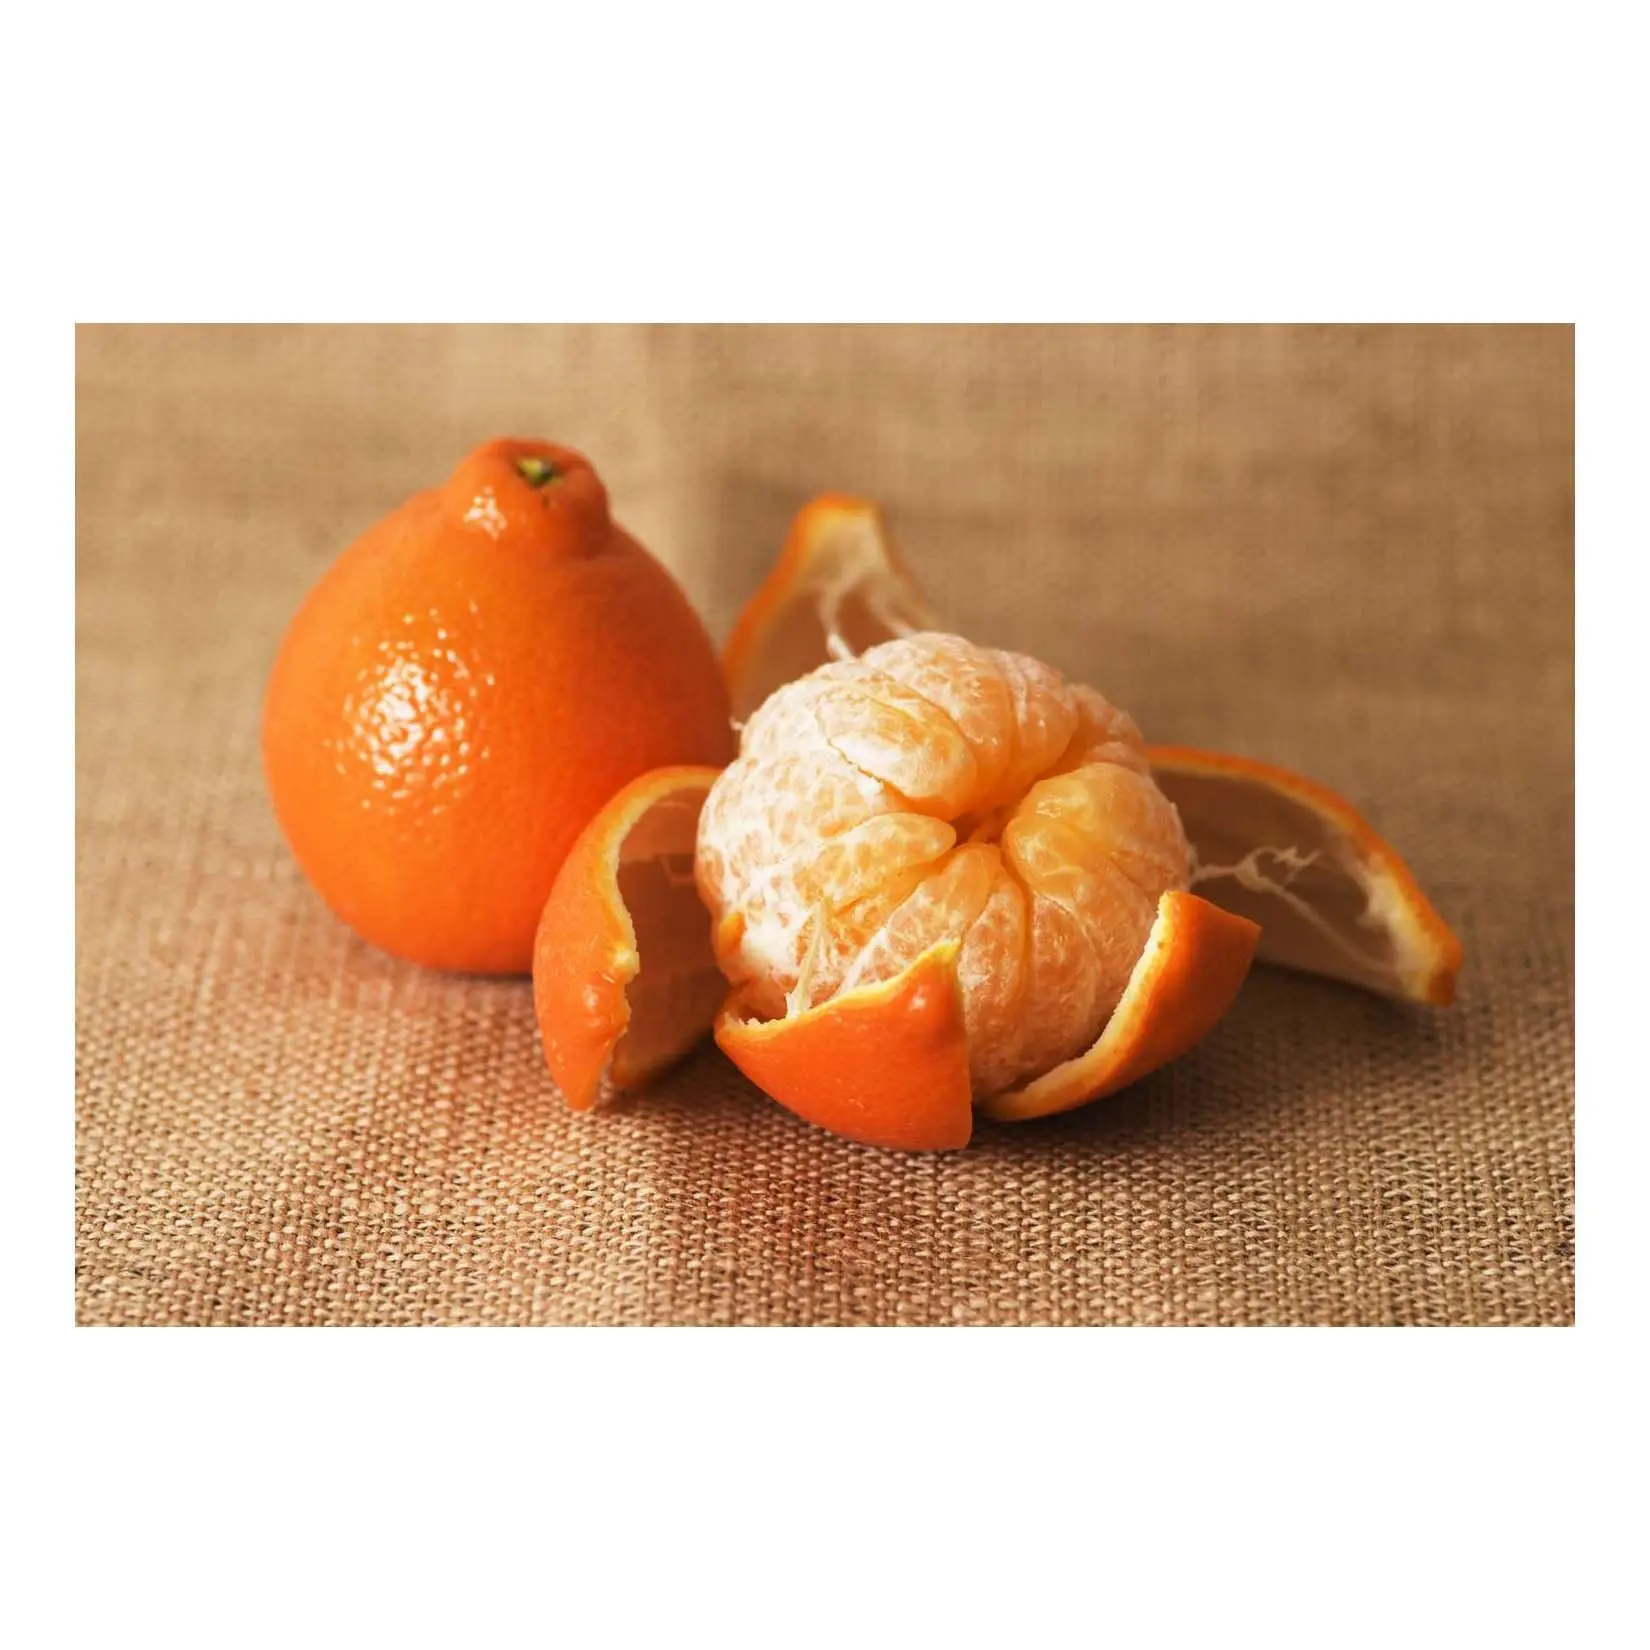 Agrumi freschi-Valencia/Navel Orange, Lime/limone, mandarino, prodotto di mandarino in vendita